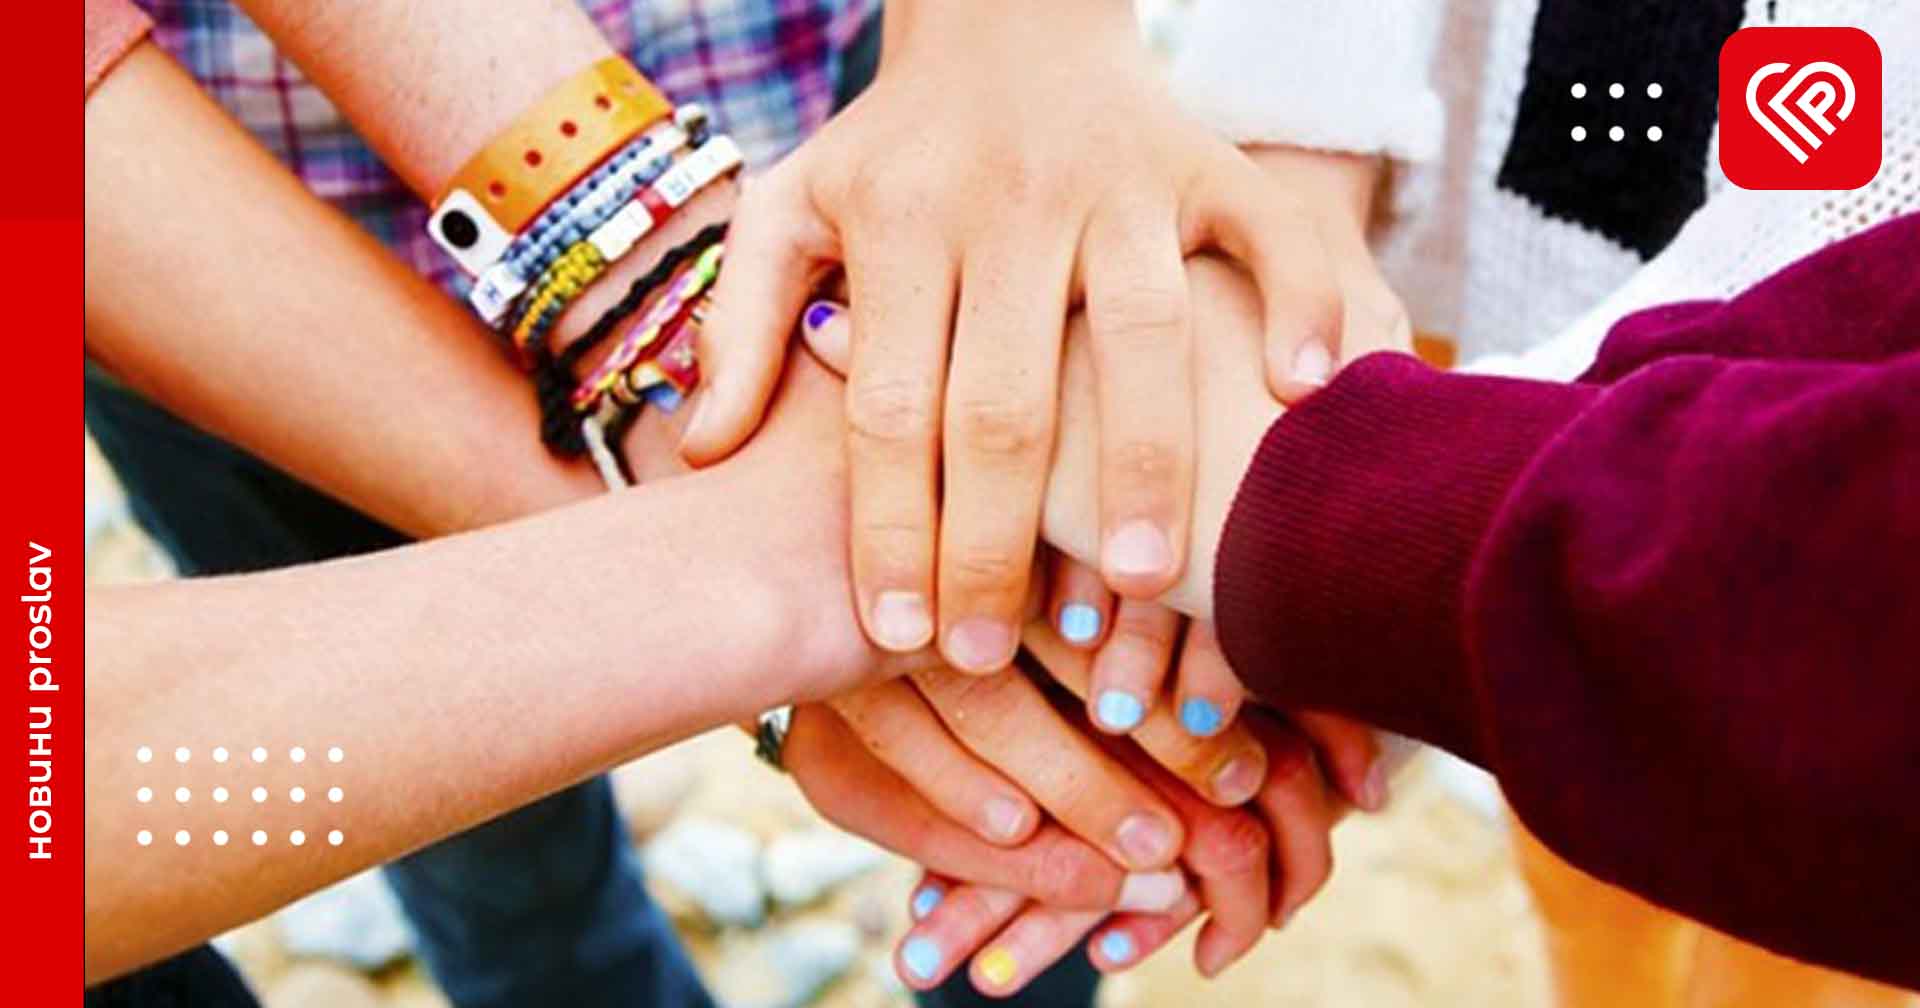 9 червня відзначають Міжнародний день дружби: любимо, цінуємо та поважаємо